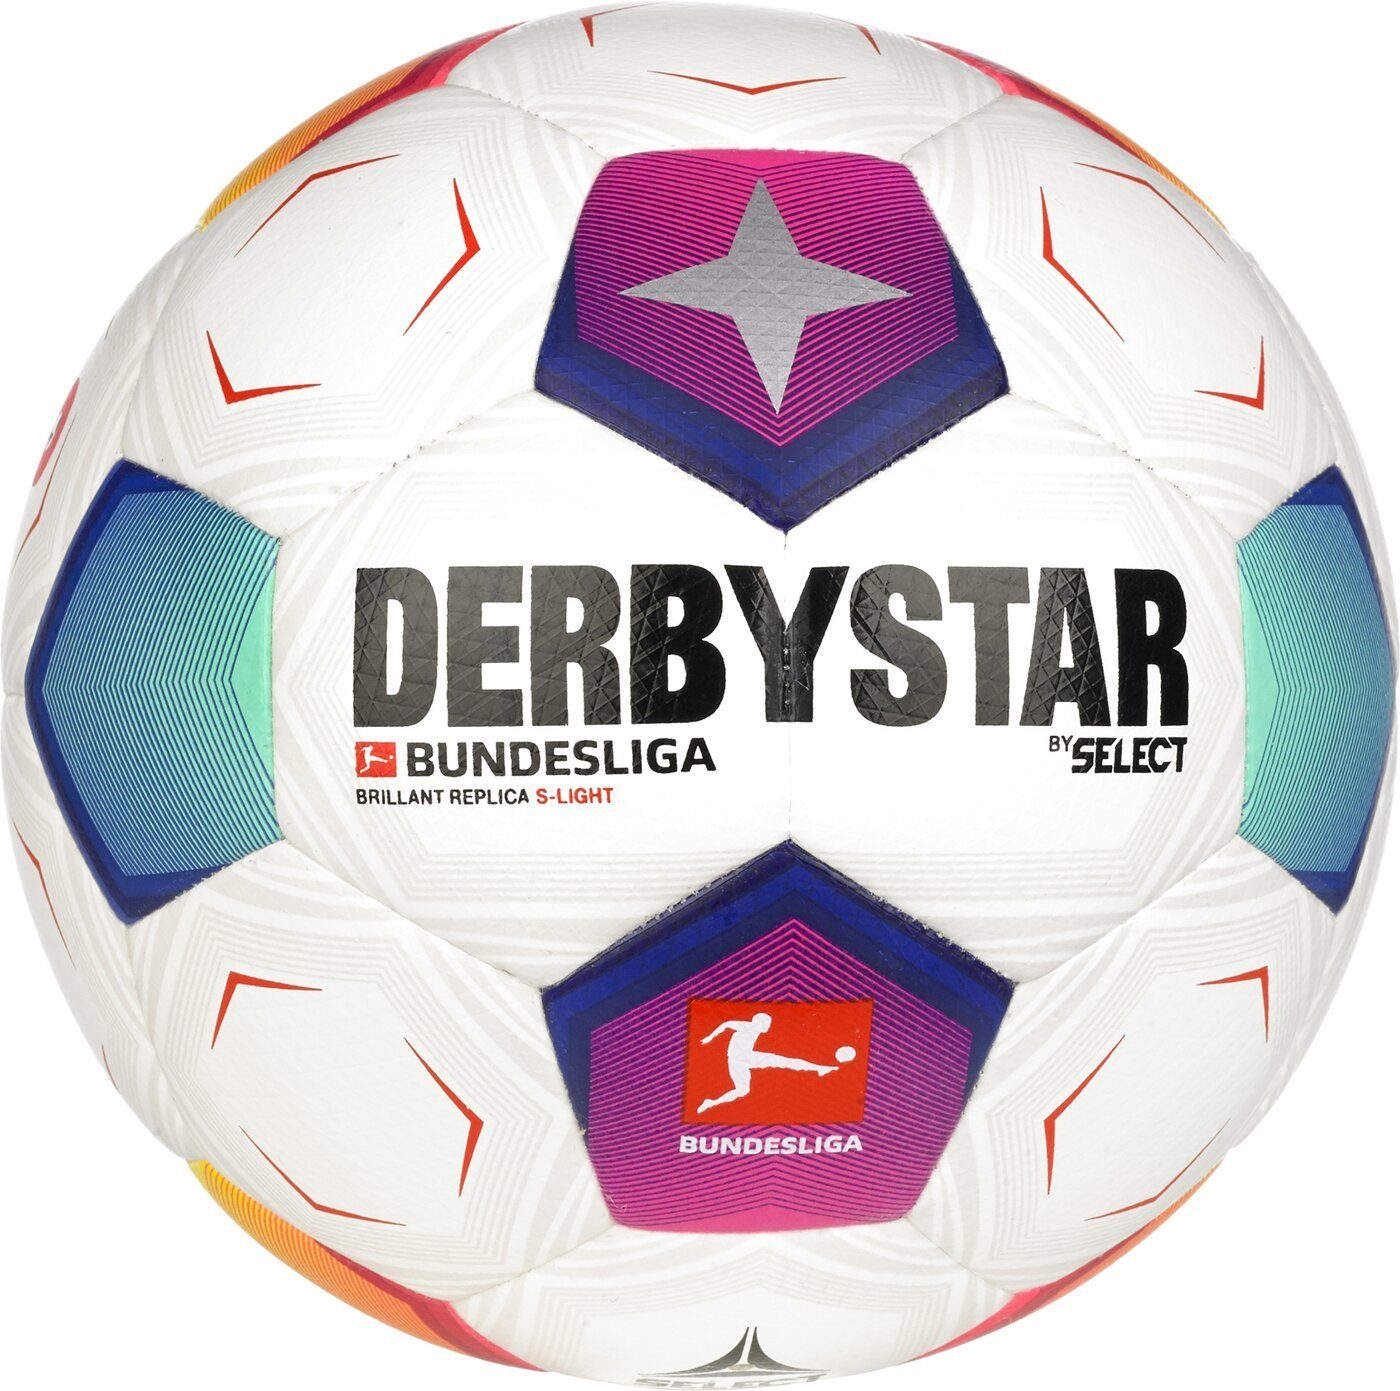 Derbystar Fußball Bundesliga Brillant Replica S-Light v23 -